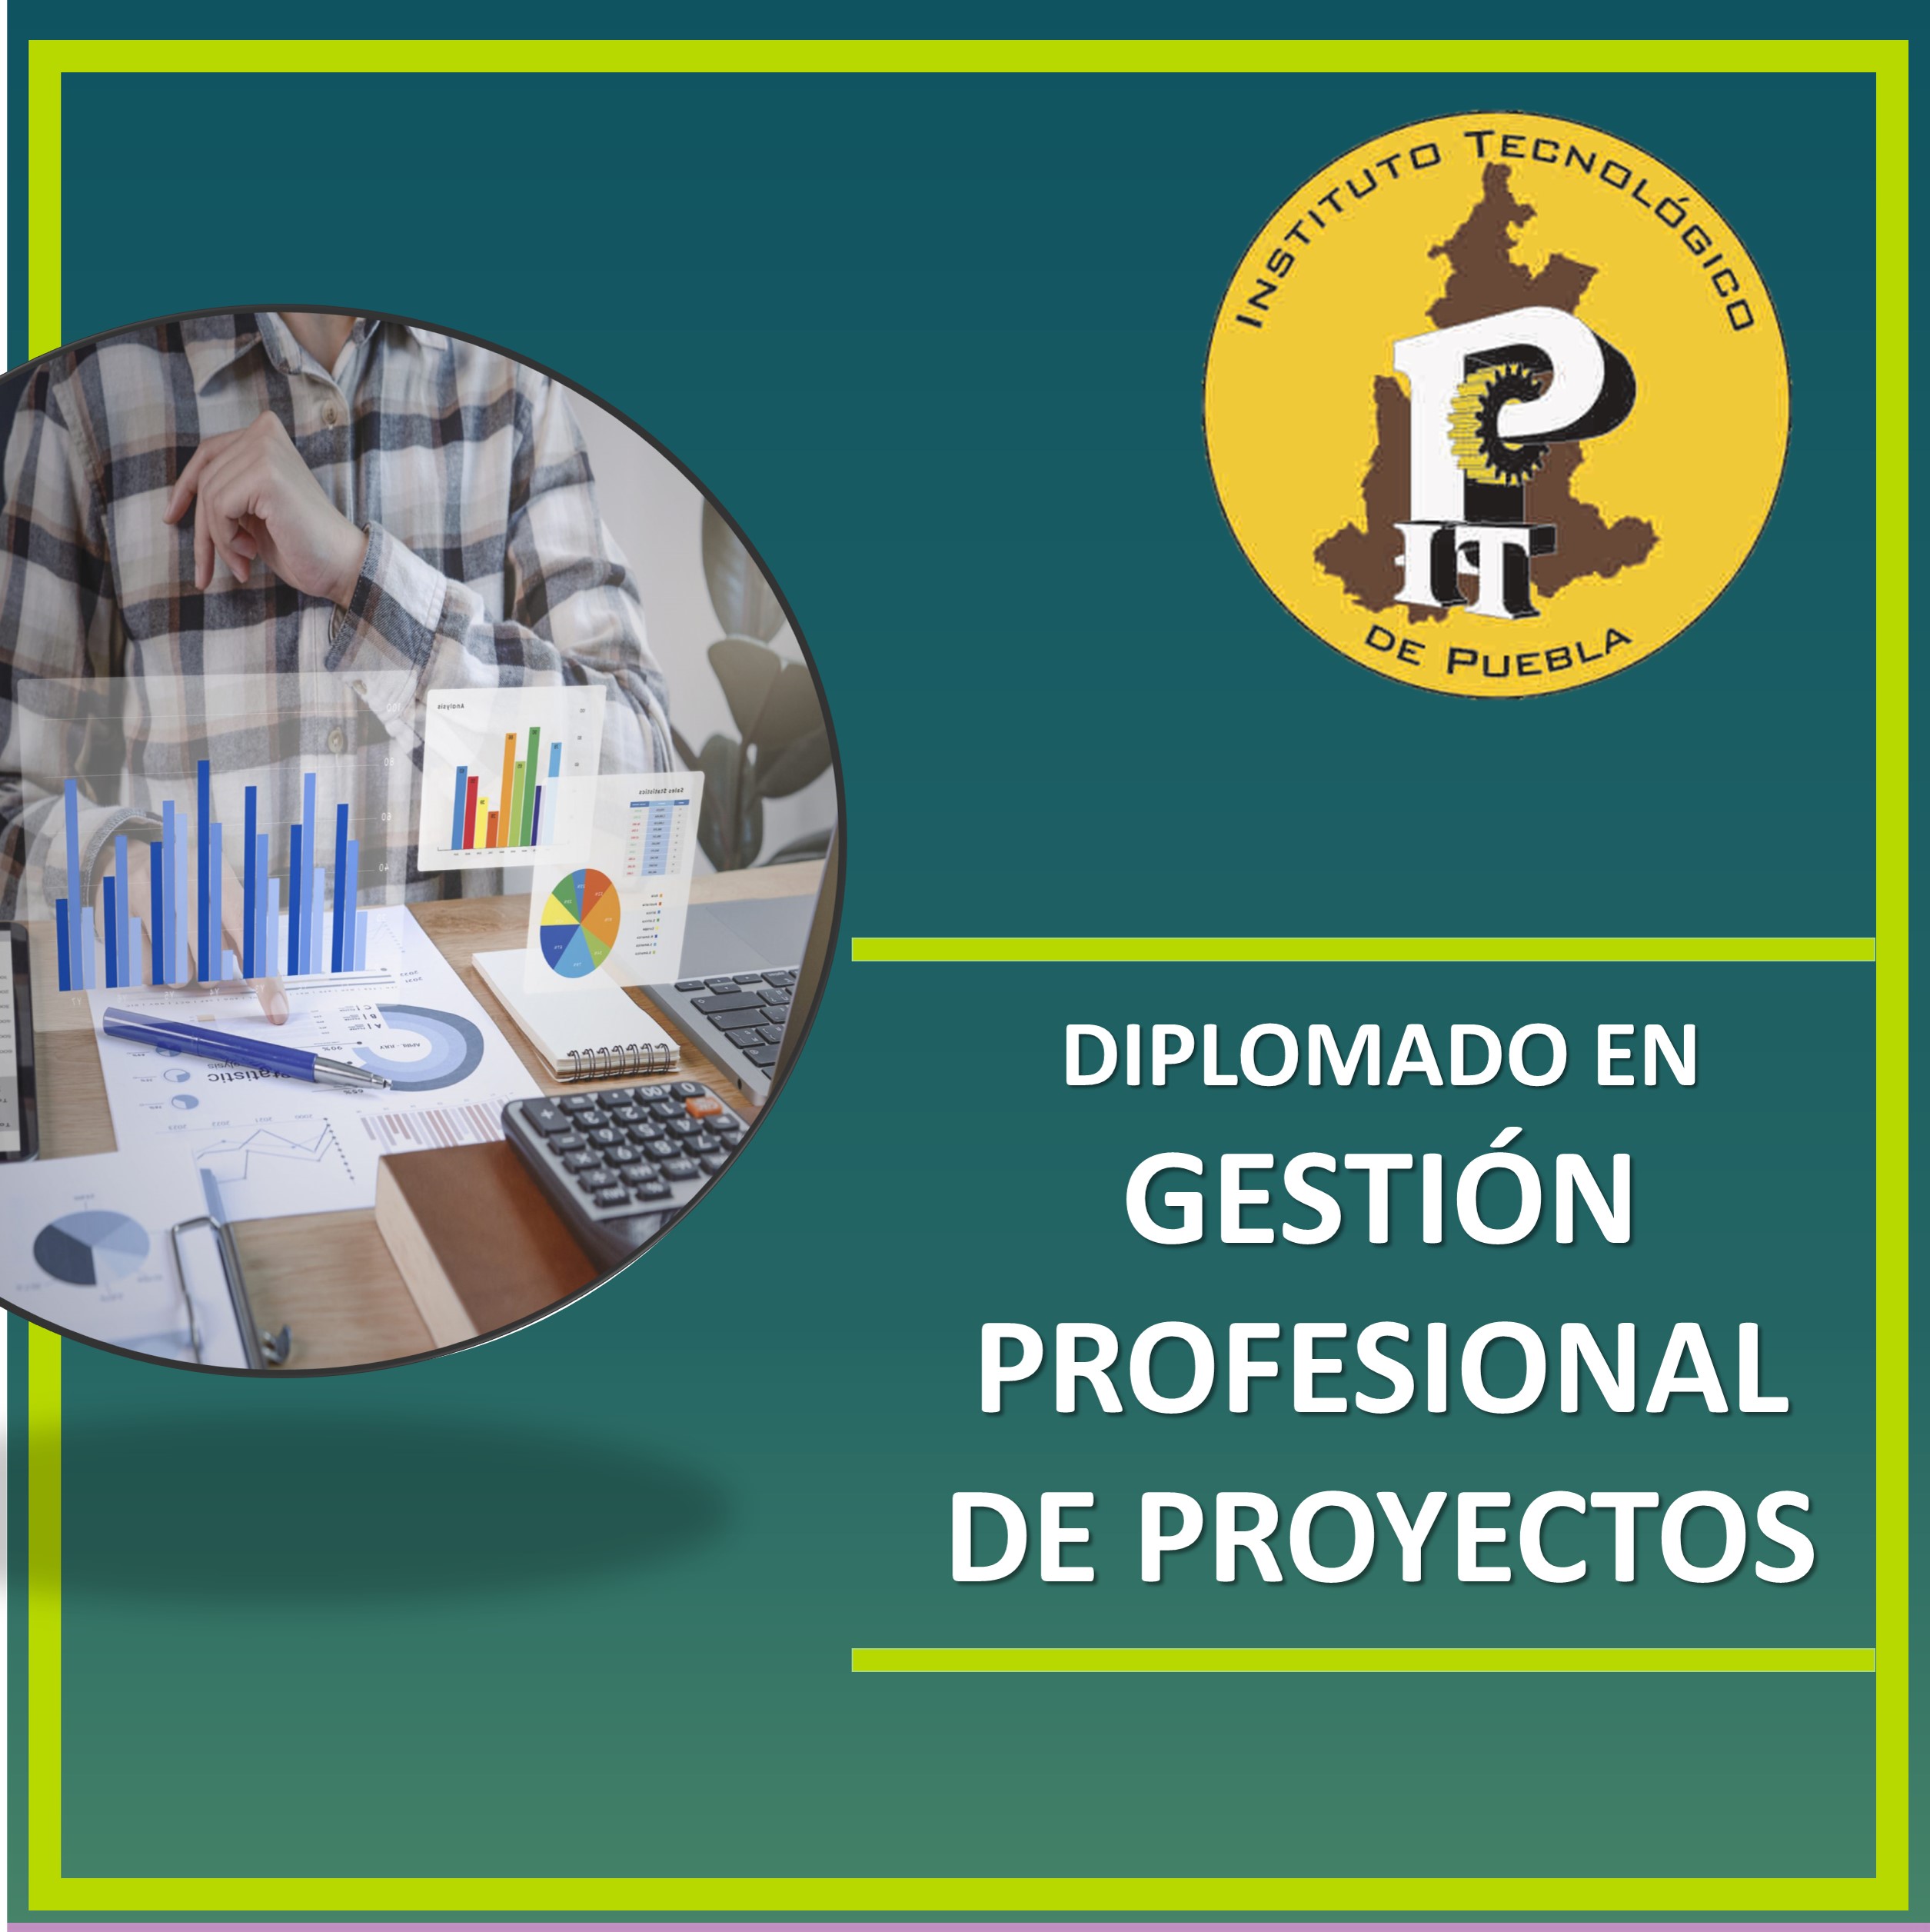 GESTIÓN PROFESIONAL DE PROYECTOS ITP B22